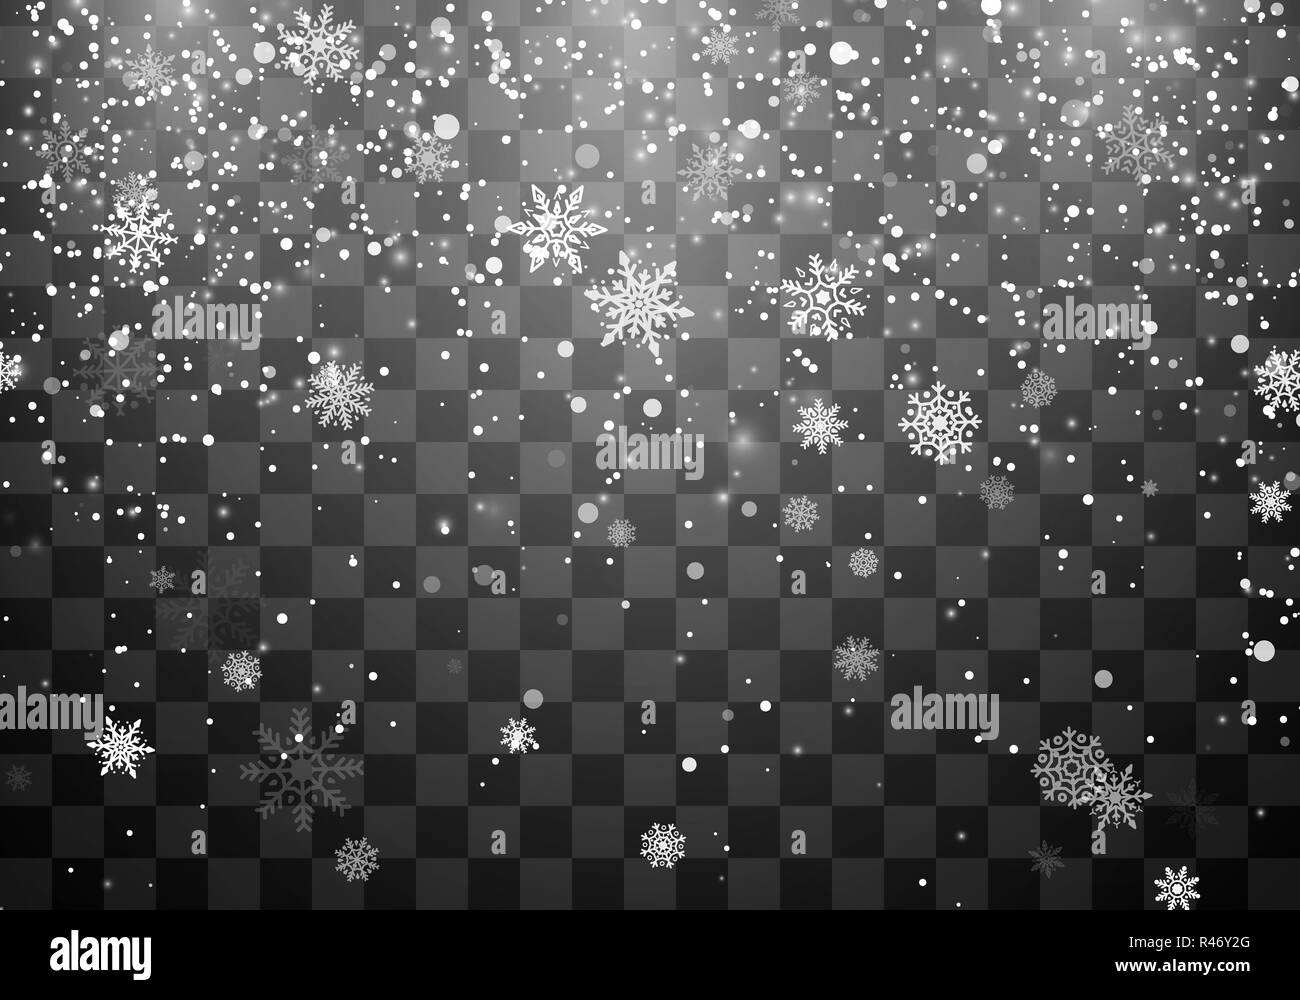 Weihnachten Schnee. Schneefall. Fallende Schneeflocken auf dunklen transparenten Hintergrund. Weihnachten Urlaub Hintergrund. Vector Illustration Stock Vektor